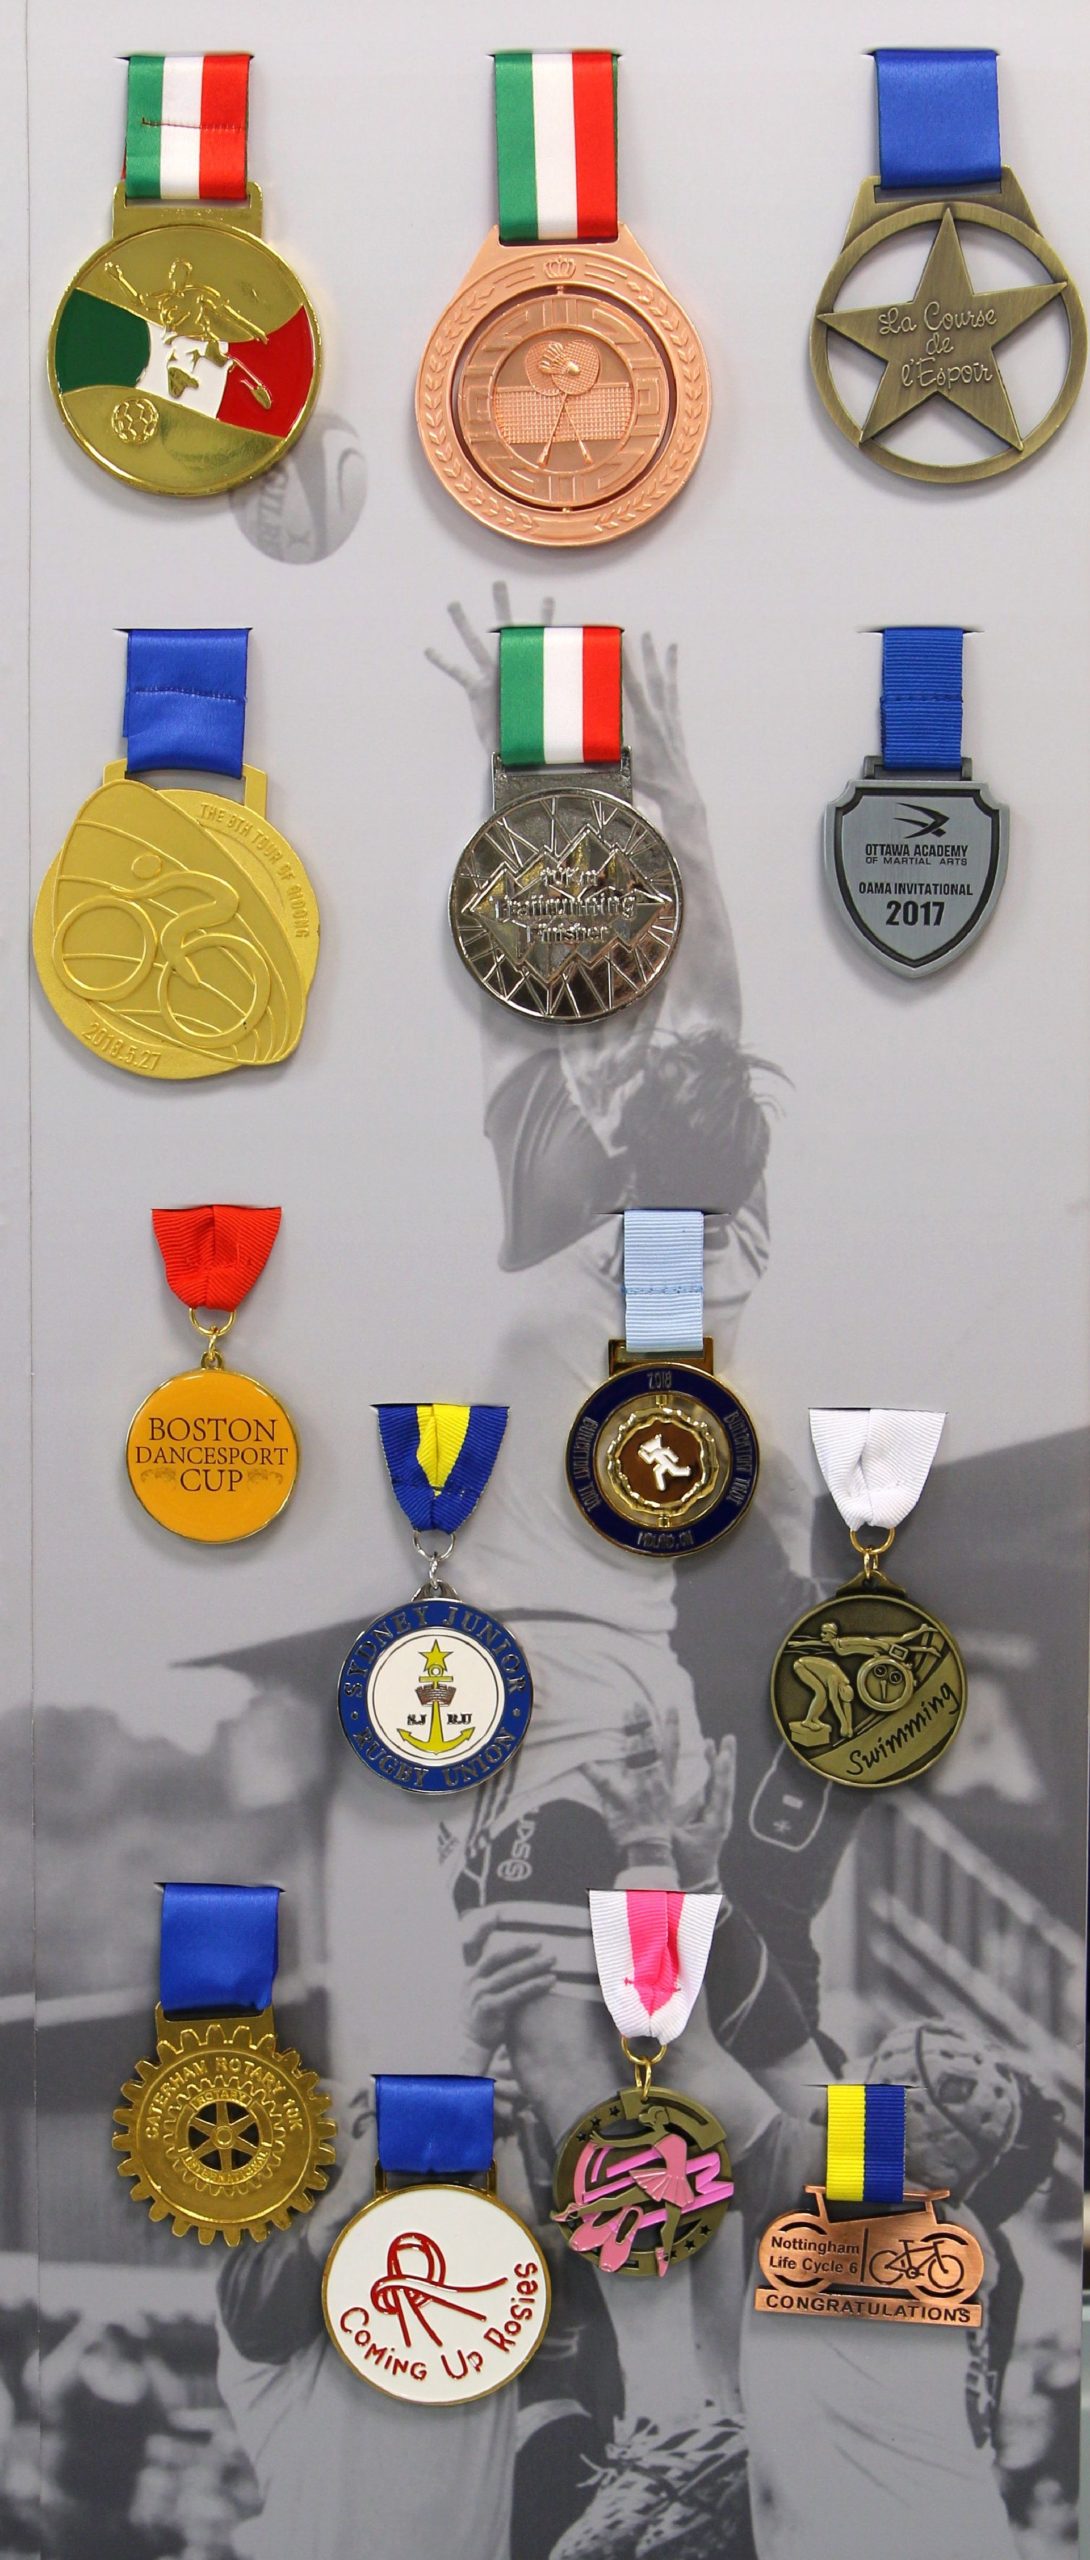 Medaglie personalizzate per premiazioni sportive e militari, solo su